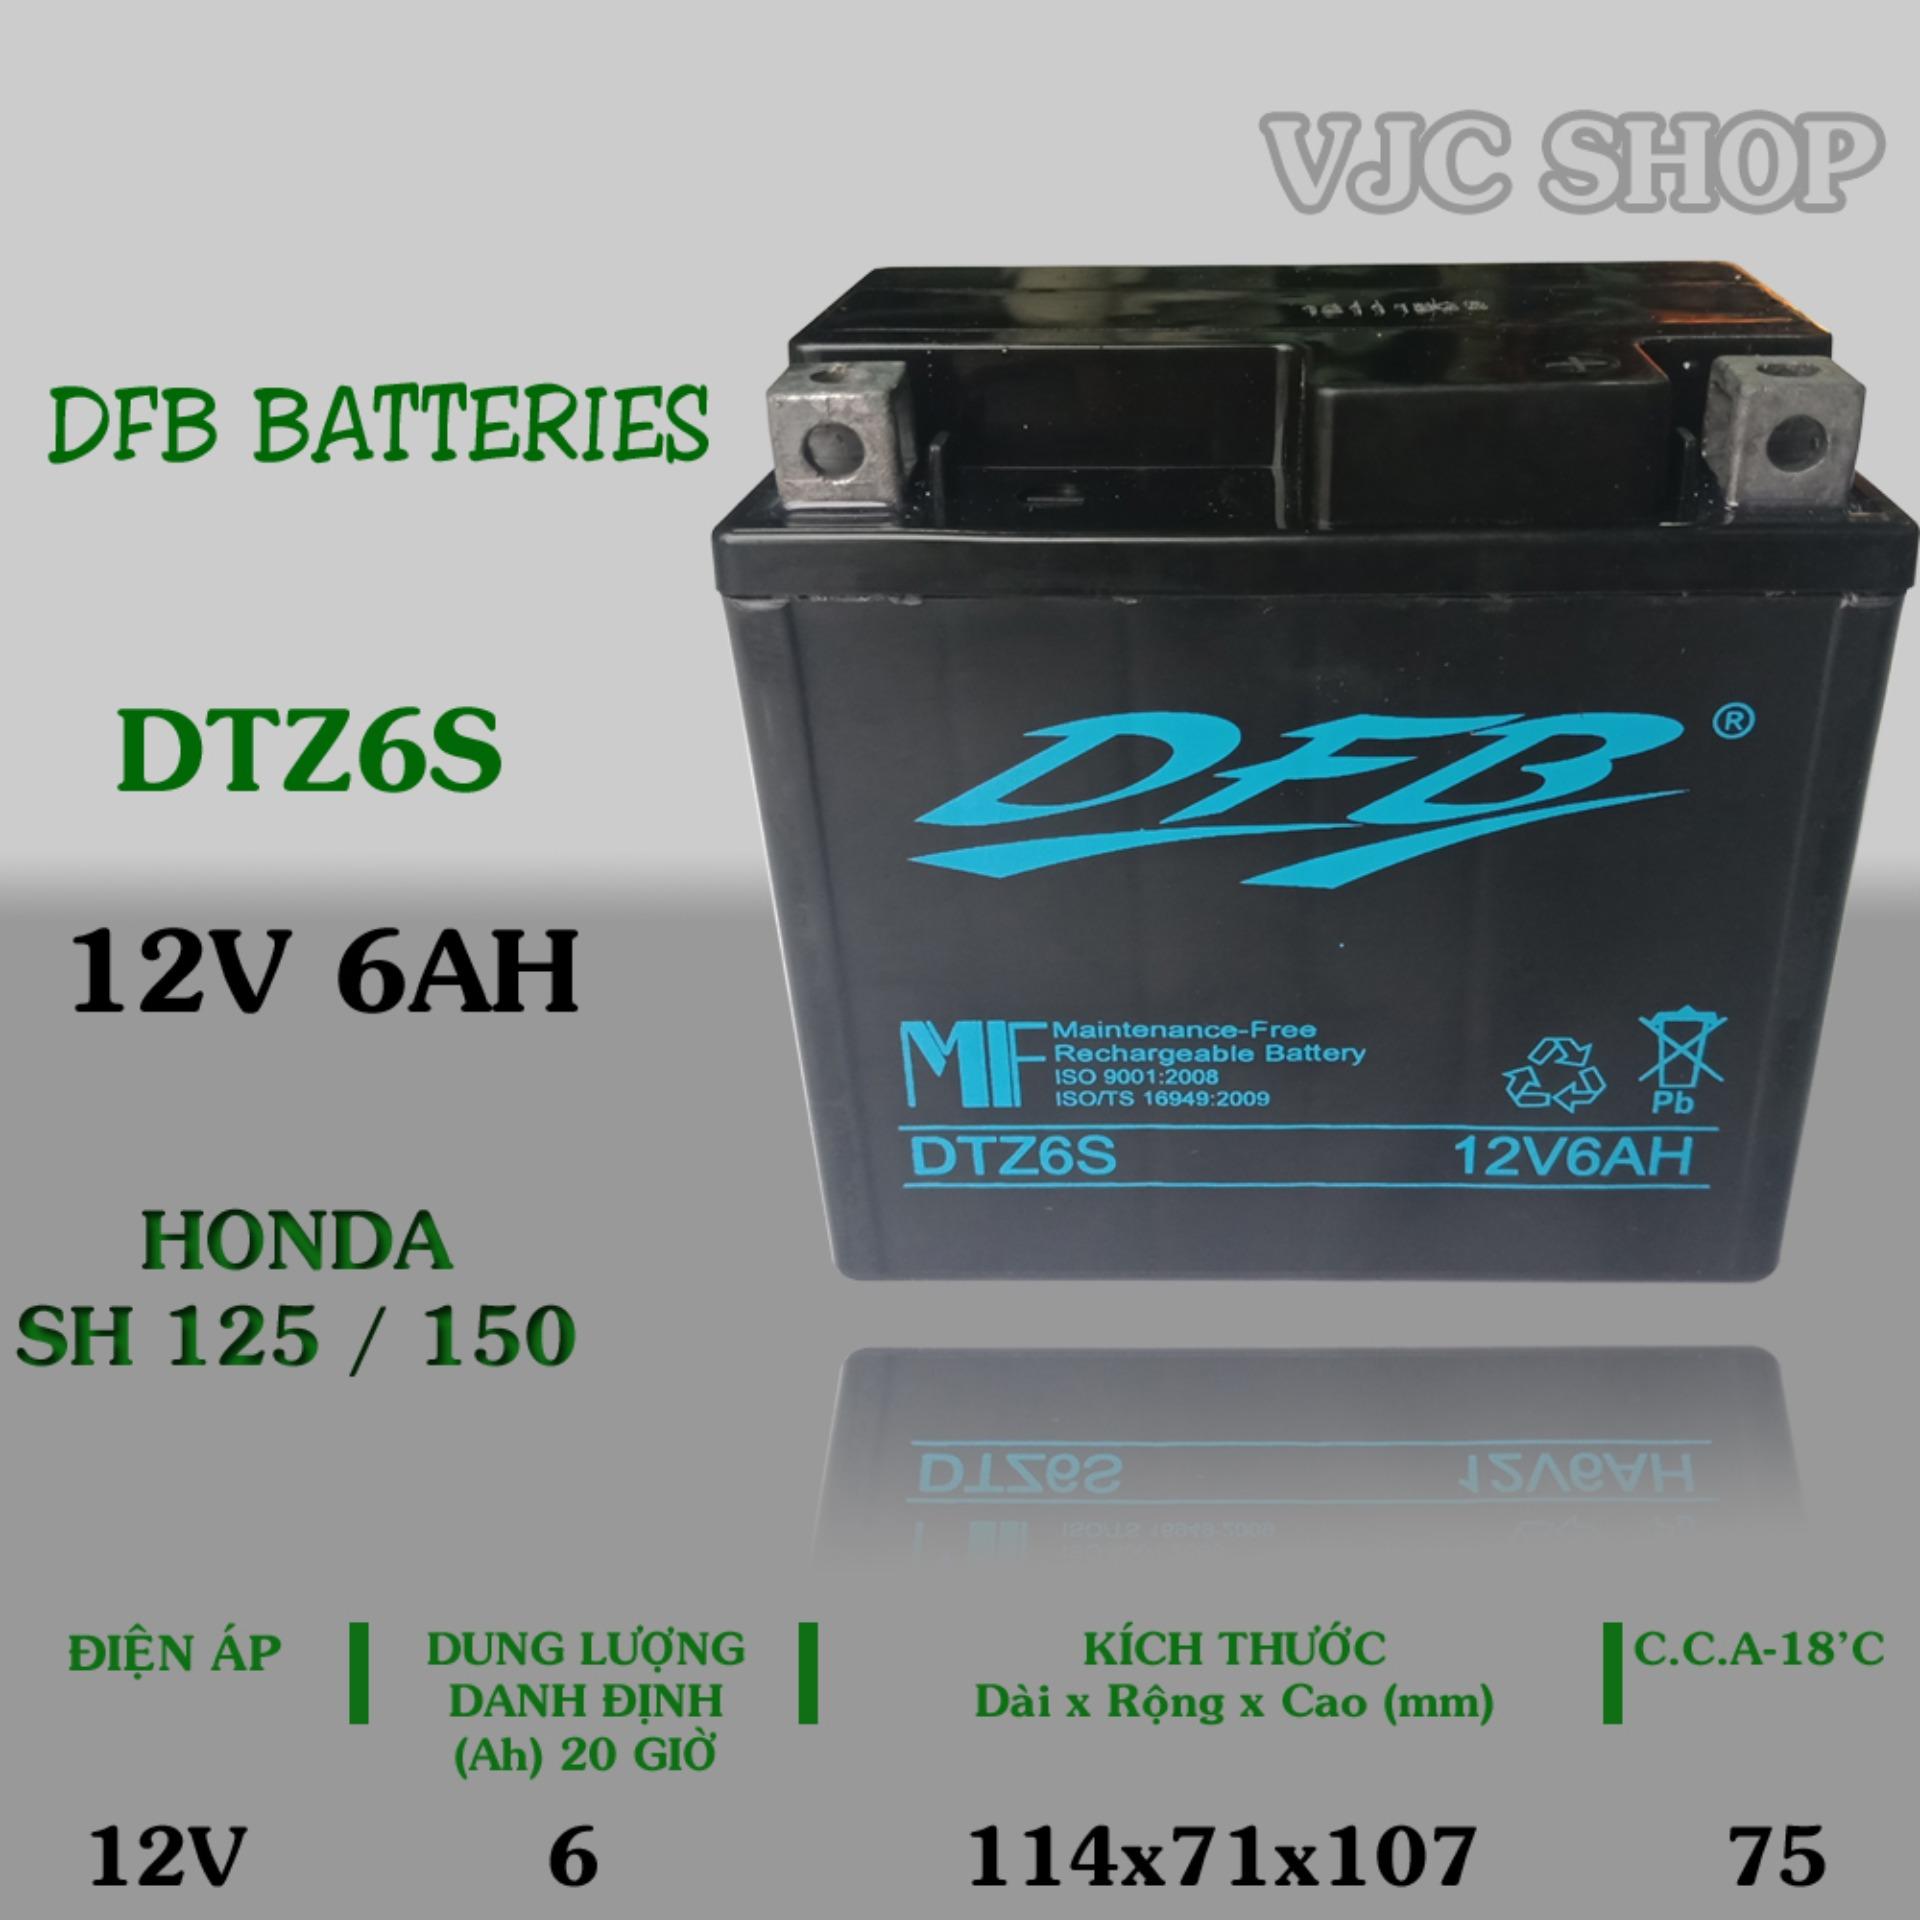 Bình ắc quy xe Honda SH hãng DFB Batteries dung lượng 12V 6AH